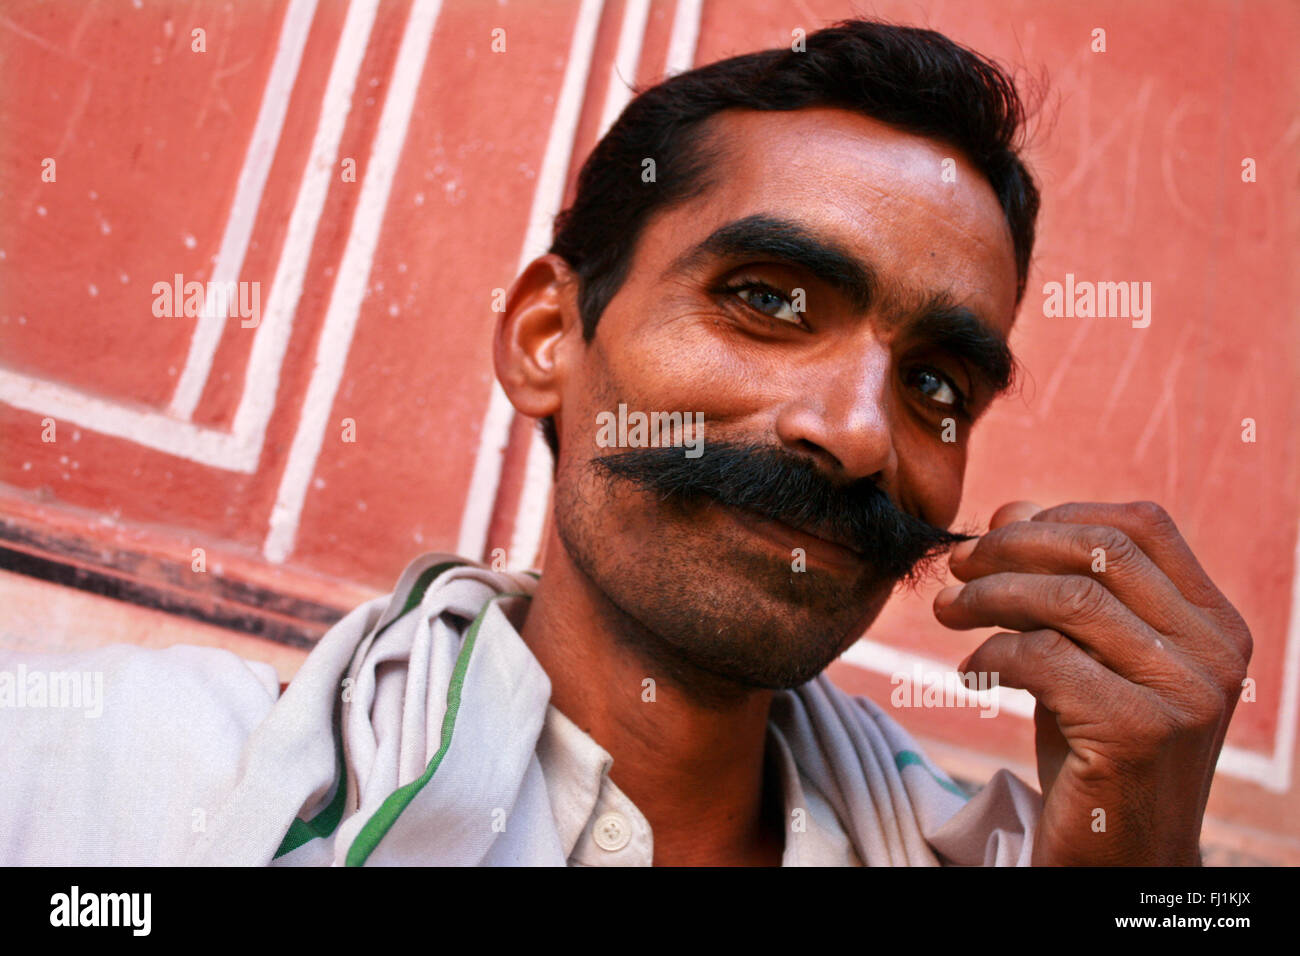 Rajasthani man with moustache , Jaipur, India Stock Photo